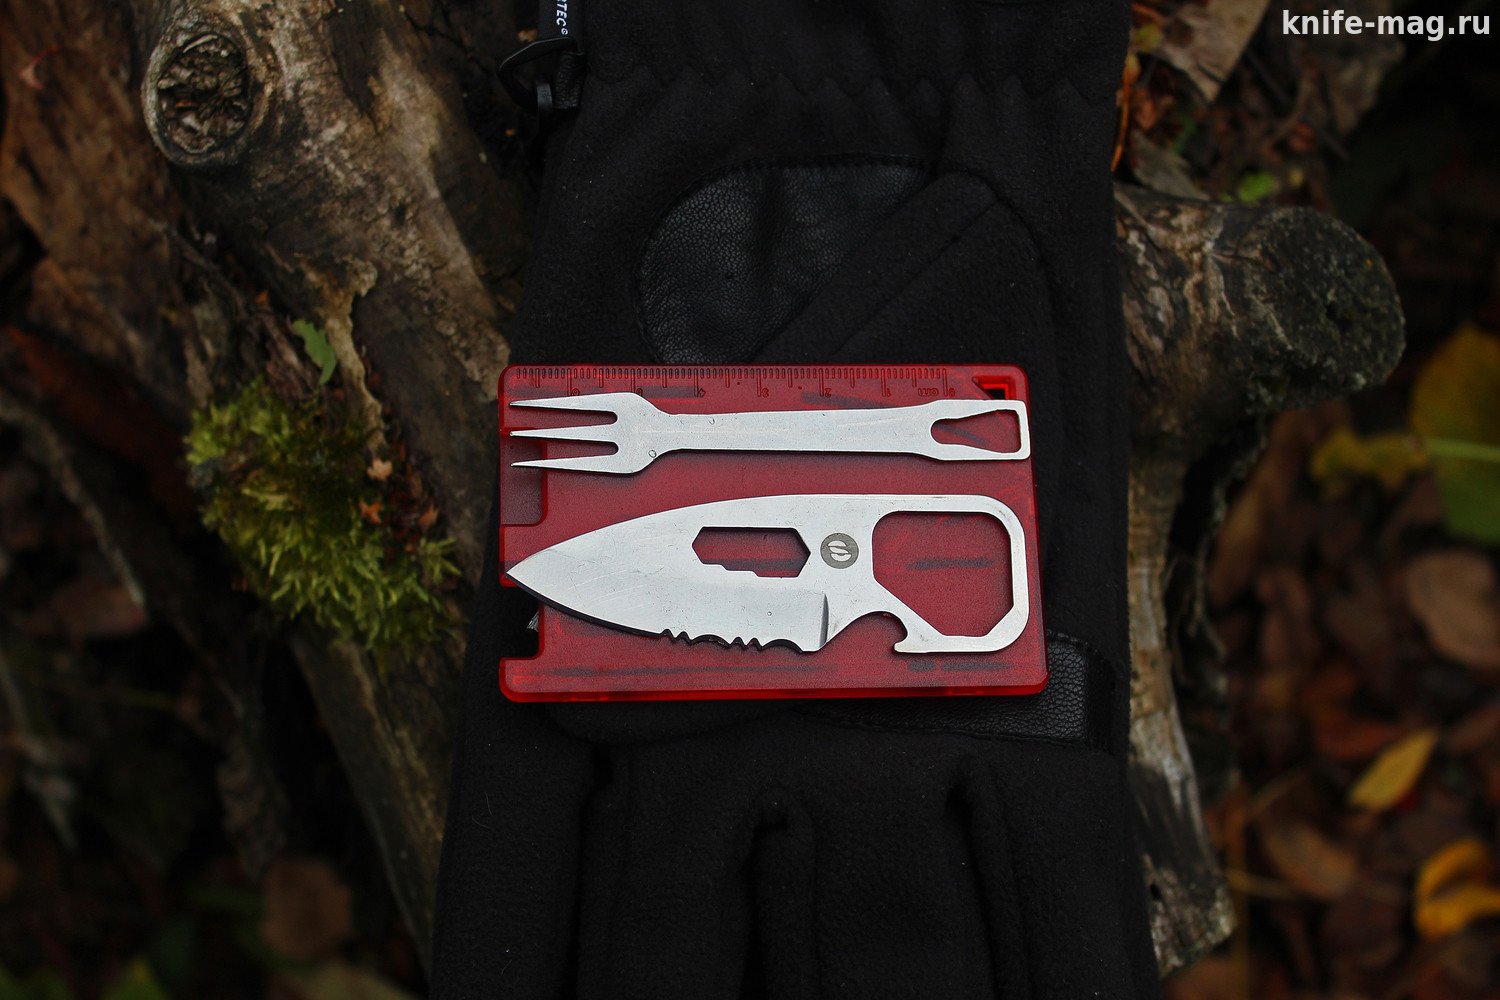 Набор-карта c ножом, вилкой, открывалкой и гаечным ключом красный